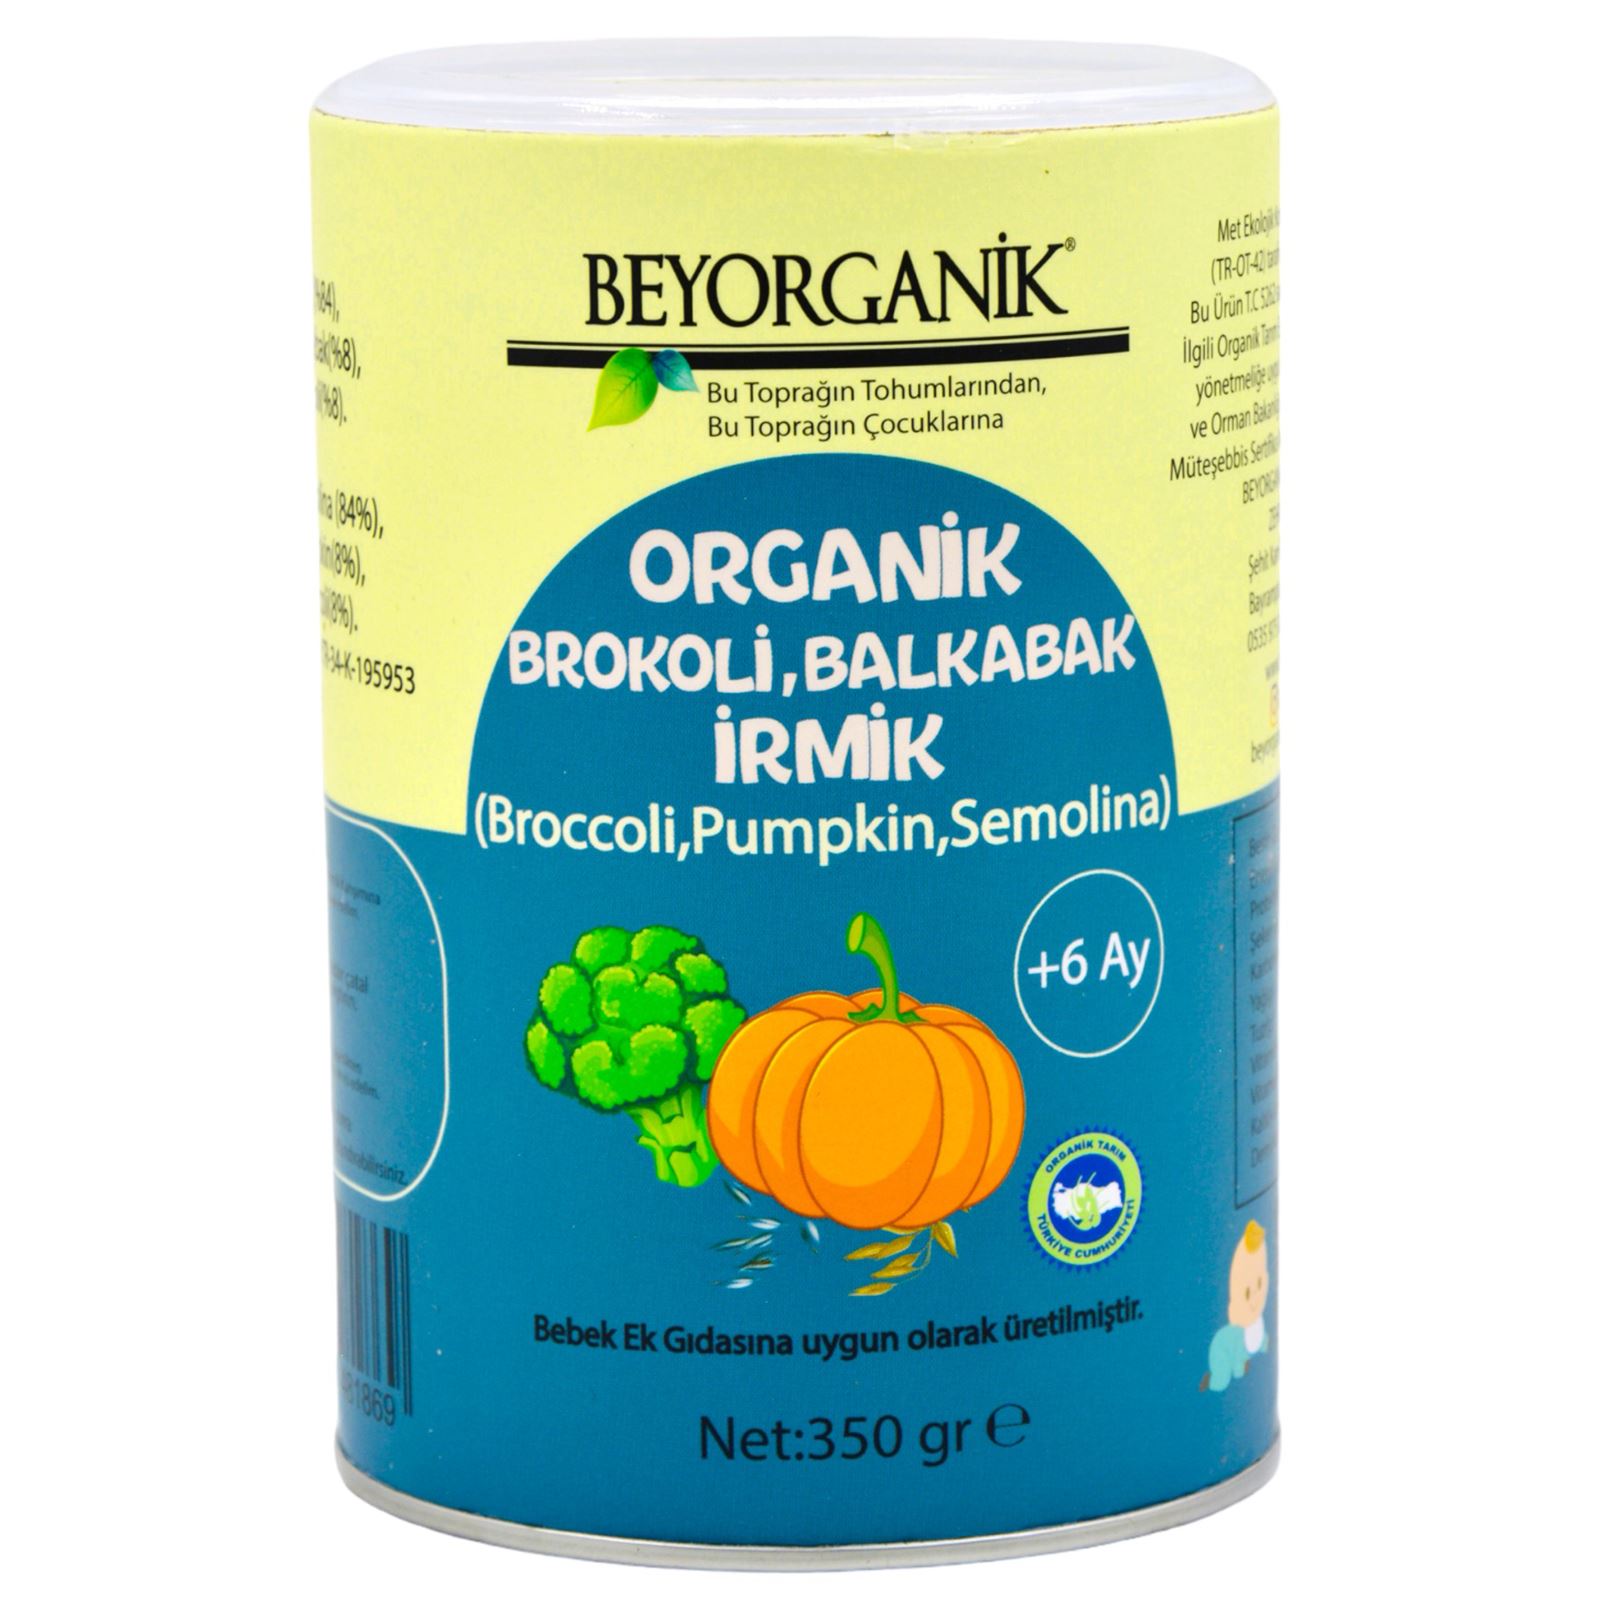 Beyorganik Bebek Ek Gıdası Organik Brokoli Balkabak İrmik 350 gr